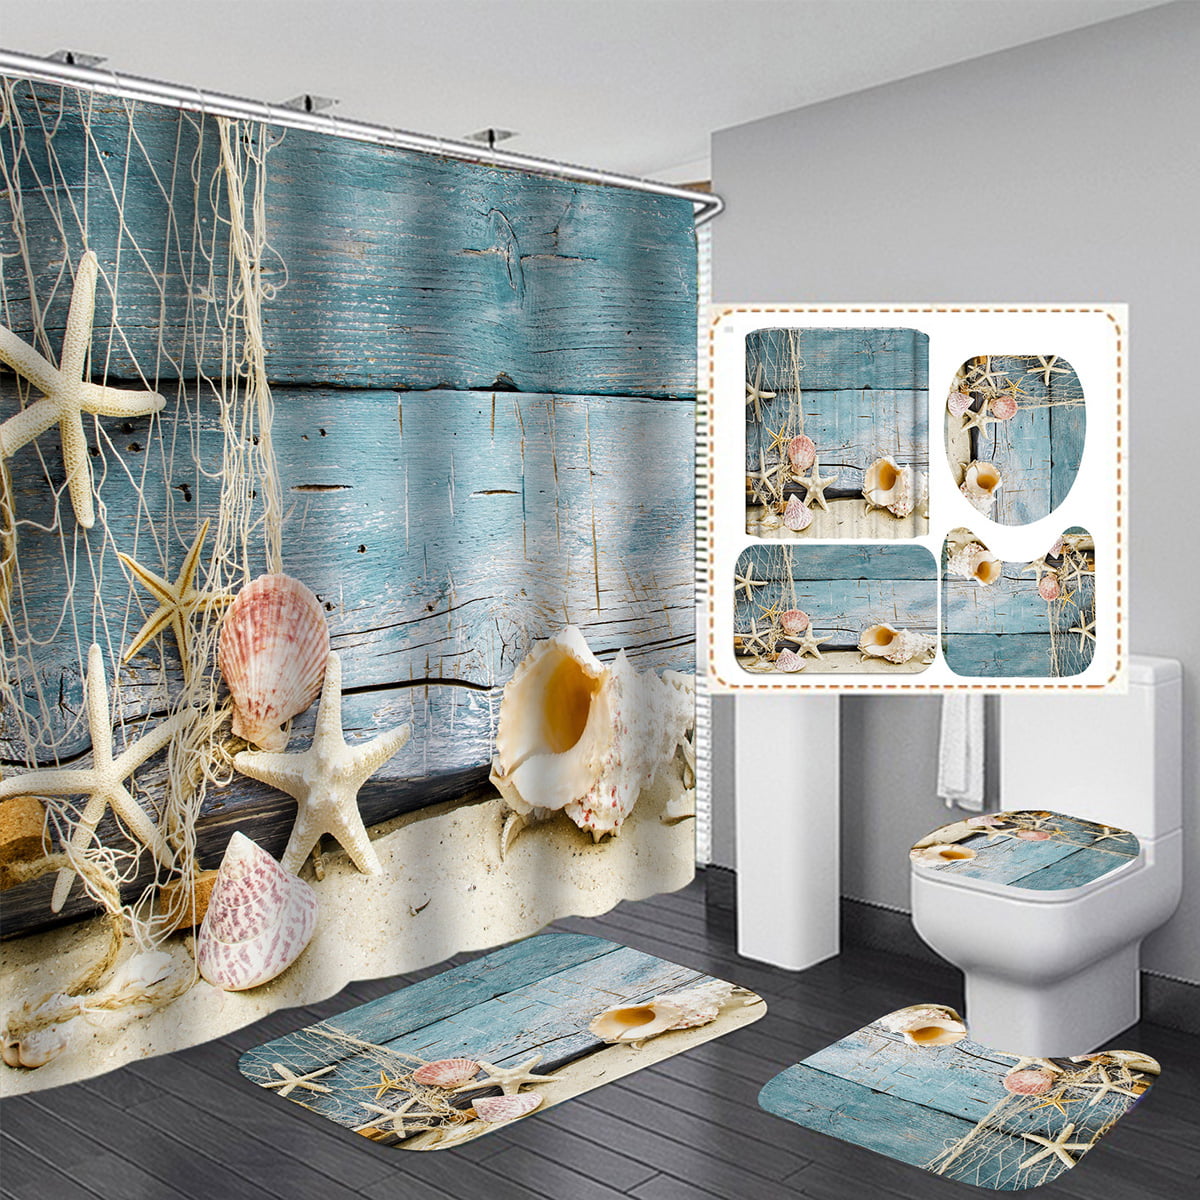 4Pcs Sea Ocean Bath Bathroom Shower Curtain Non Slip Toilet Cover Rugs Mat Sets 